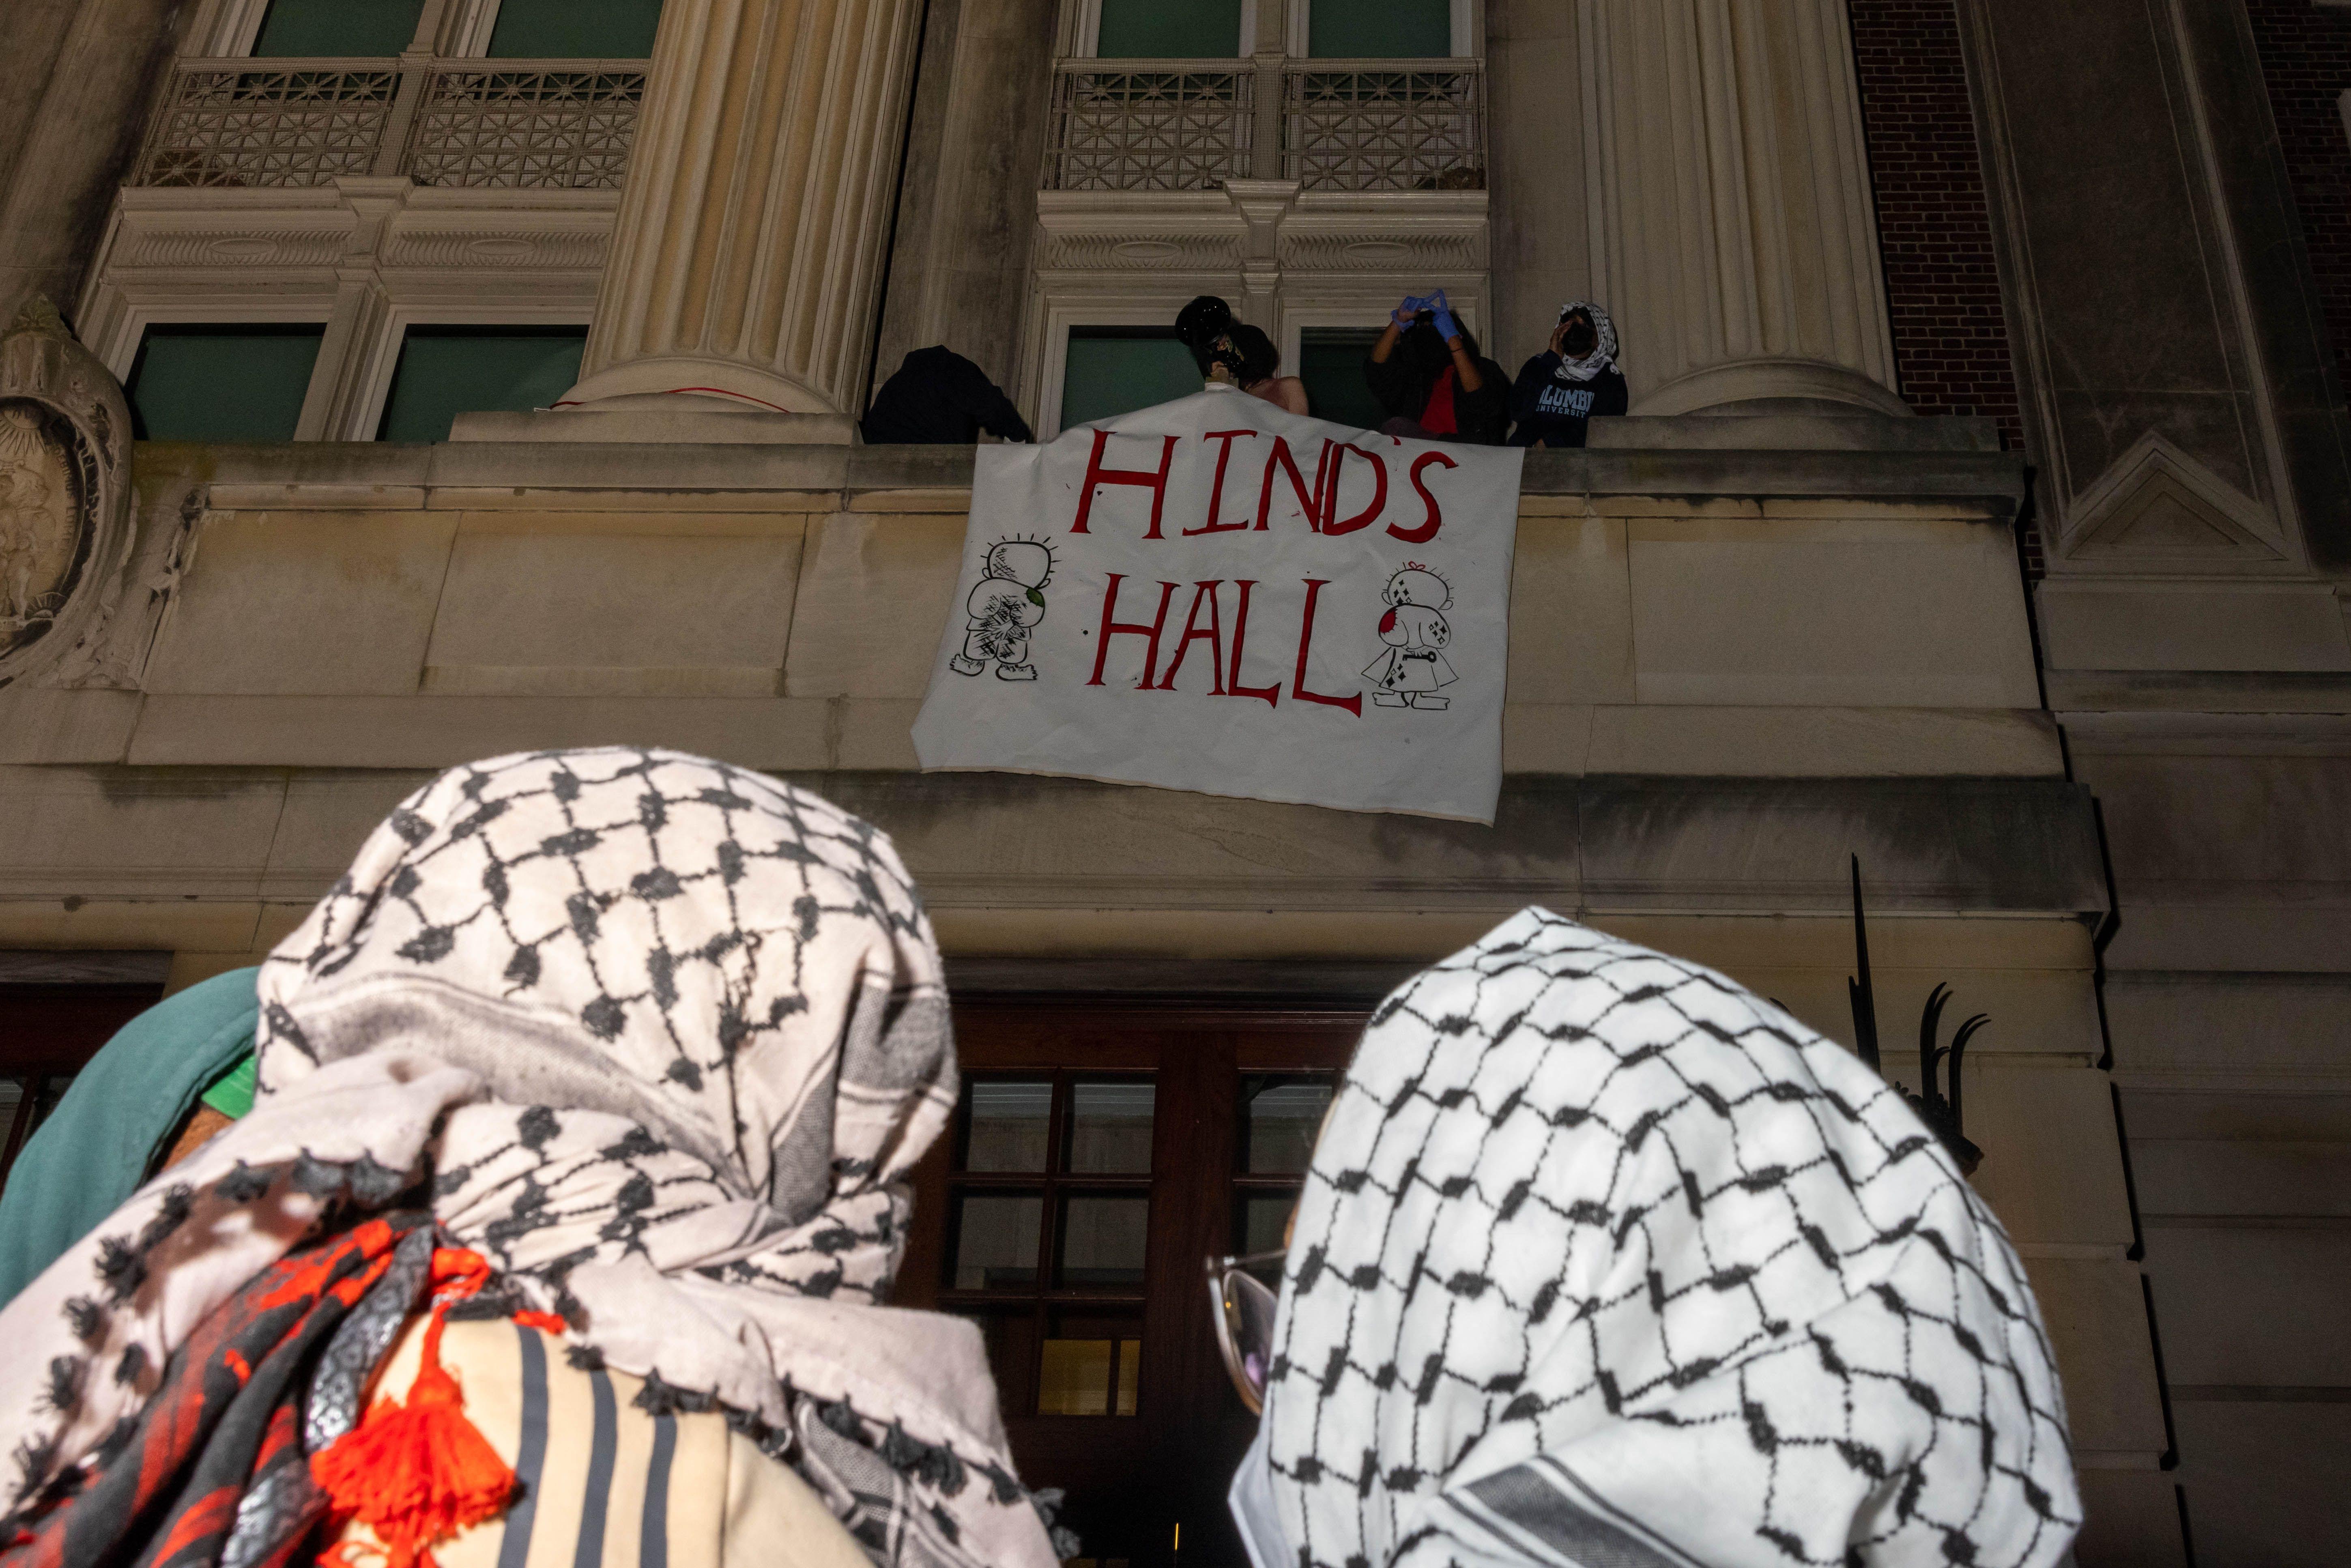 Manifestantes con pañuelos palestinos en la cabeza ven como ocupantes del edificio colocan un cartel en un balcón que dice "Hind's Hall", es decir, "Sala de Hind"